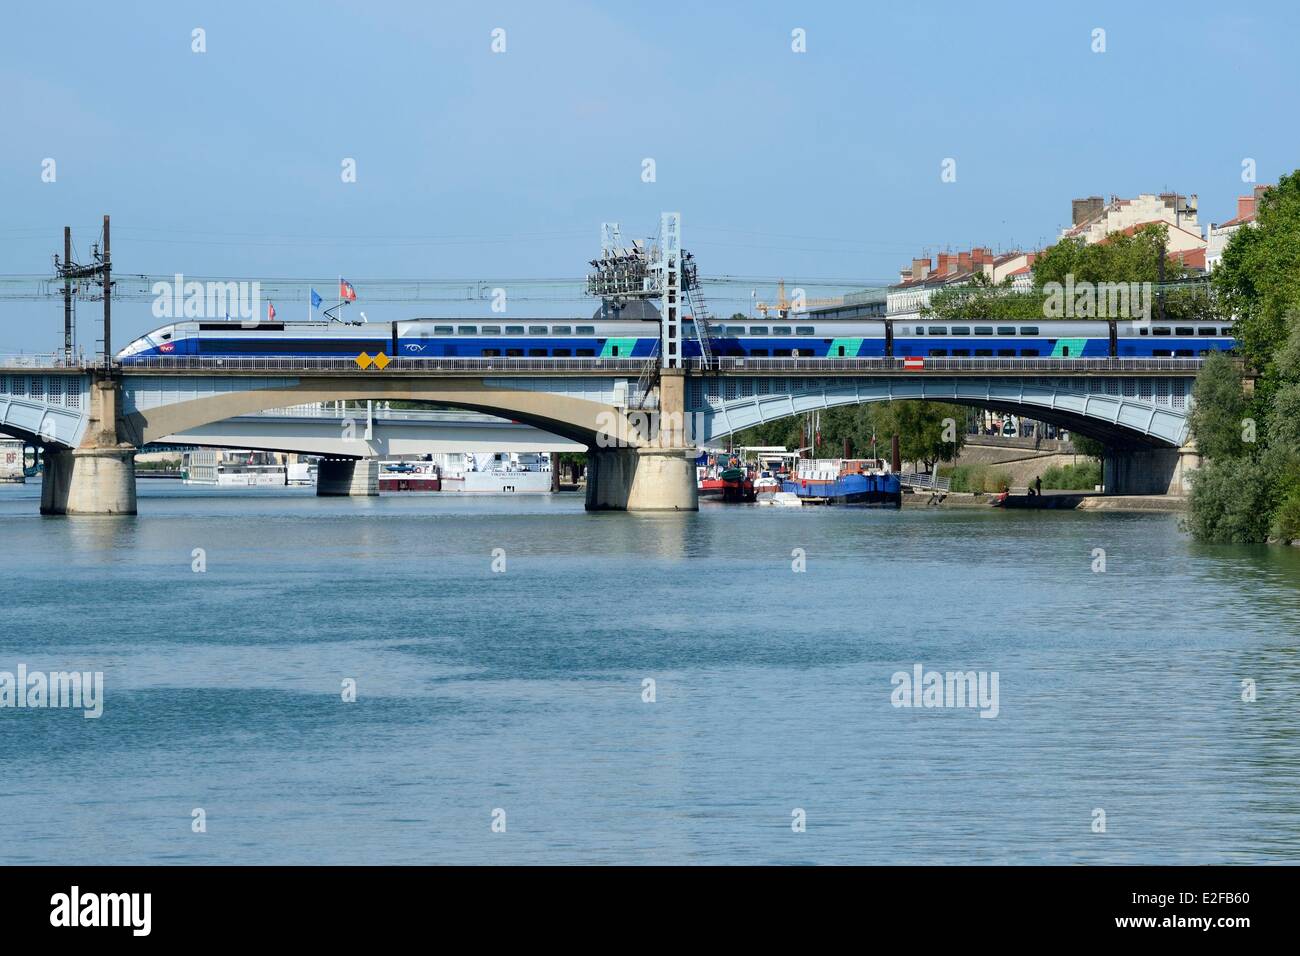 Francia, Ródano, Lyon, tren de alta velocidad (TGV) cruzar el Ródano, cerca de la estación Perrache Foto de stock